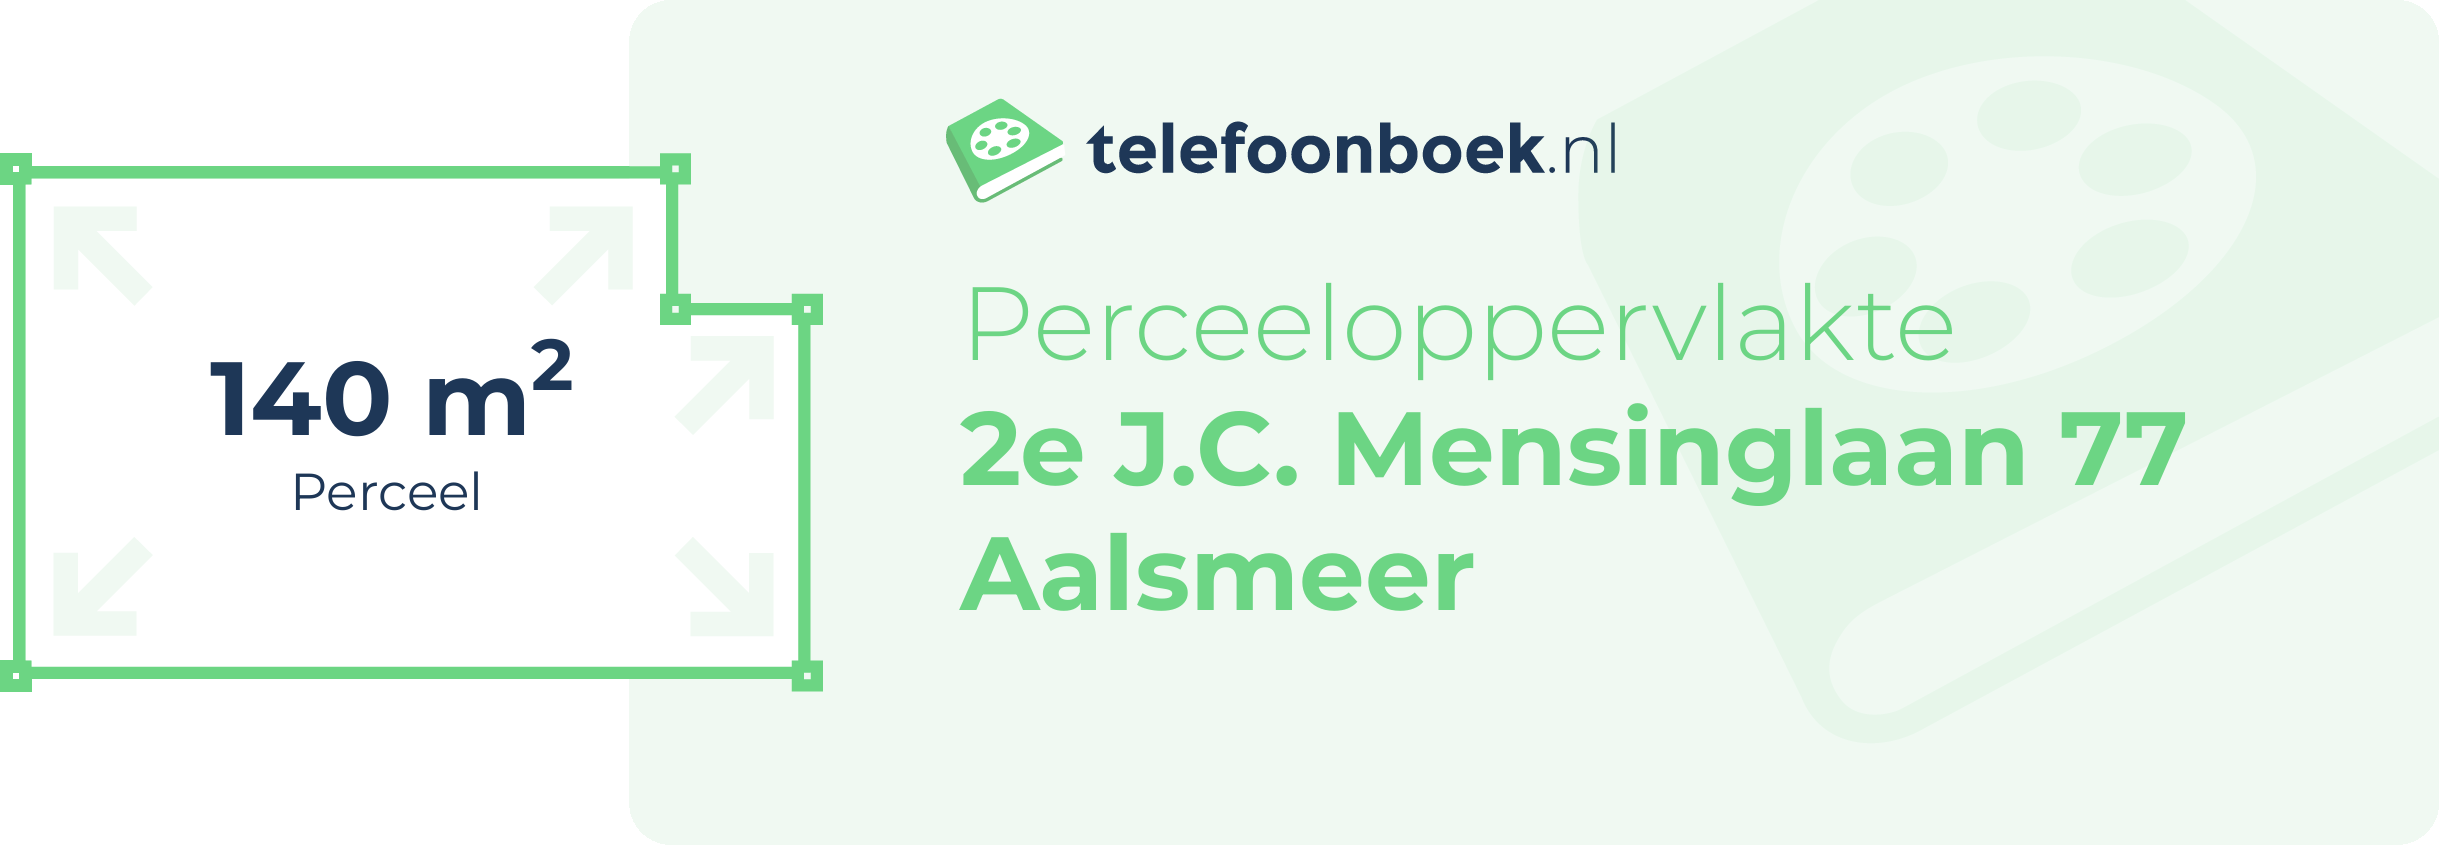 Perceeloppervlakte 2e J.C. Mensinglaan 77 Aalsmeer